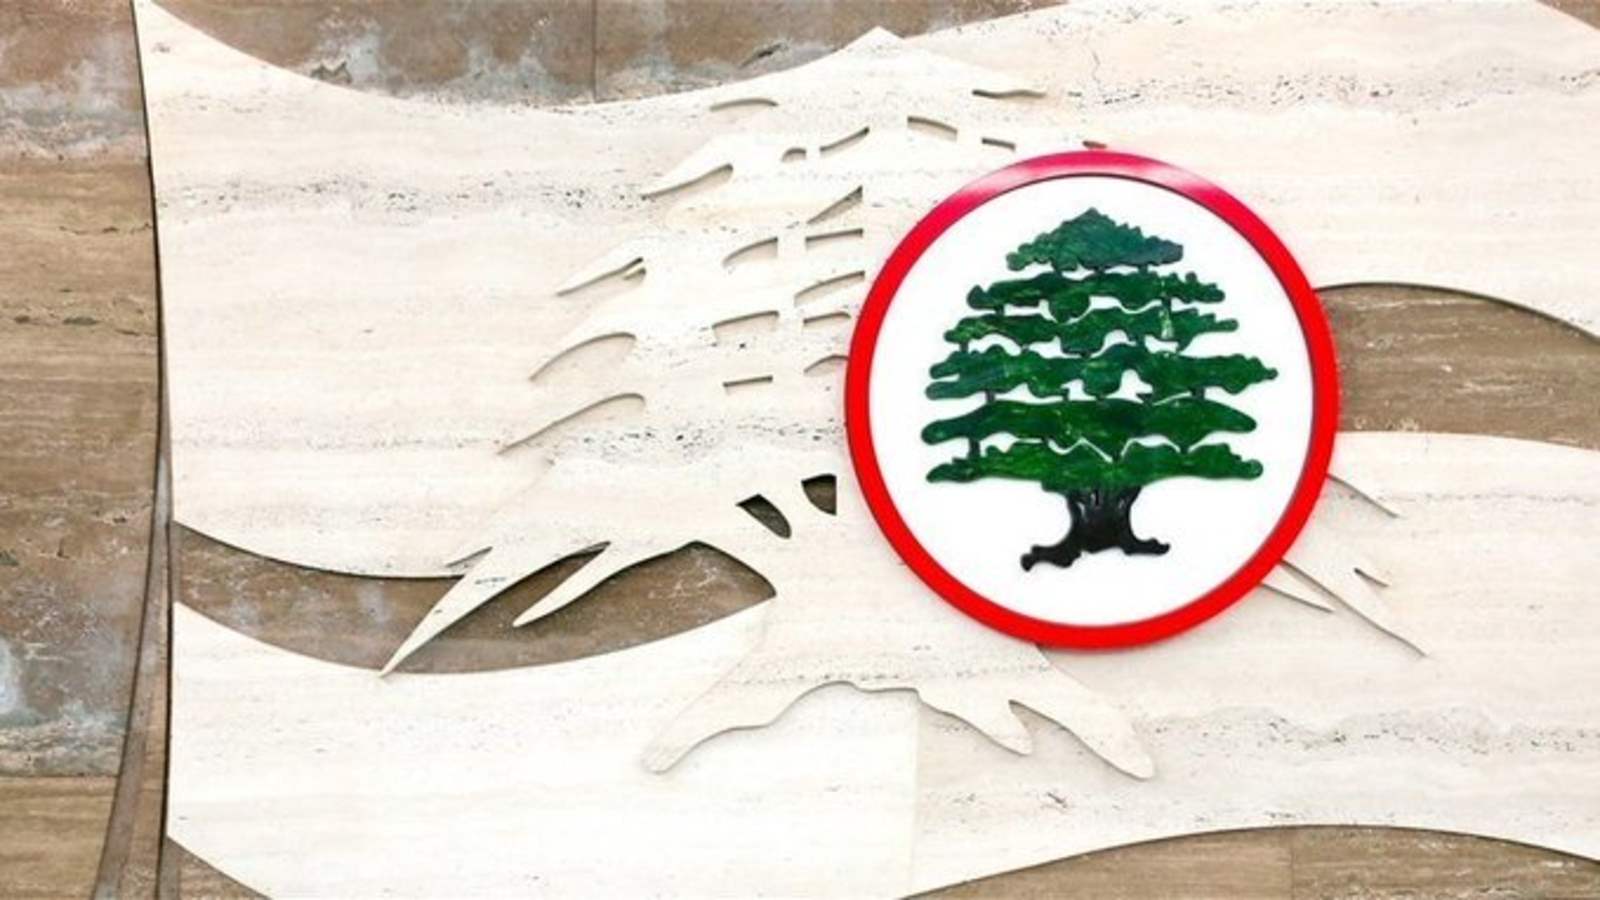 القوات اللبنانية - عاليه: لمن خانته الذاكرة كوع الكحالة ممر للحرية والشرعية فقط